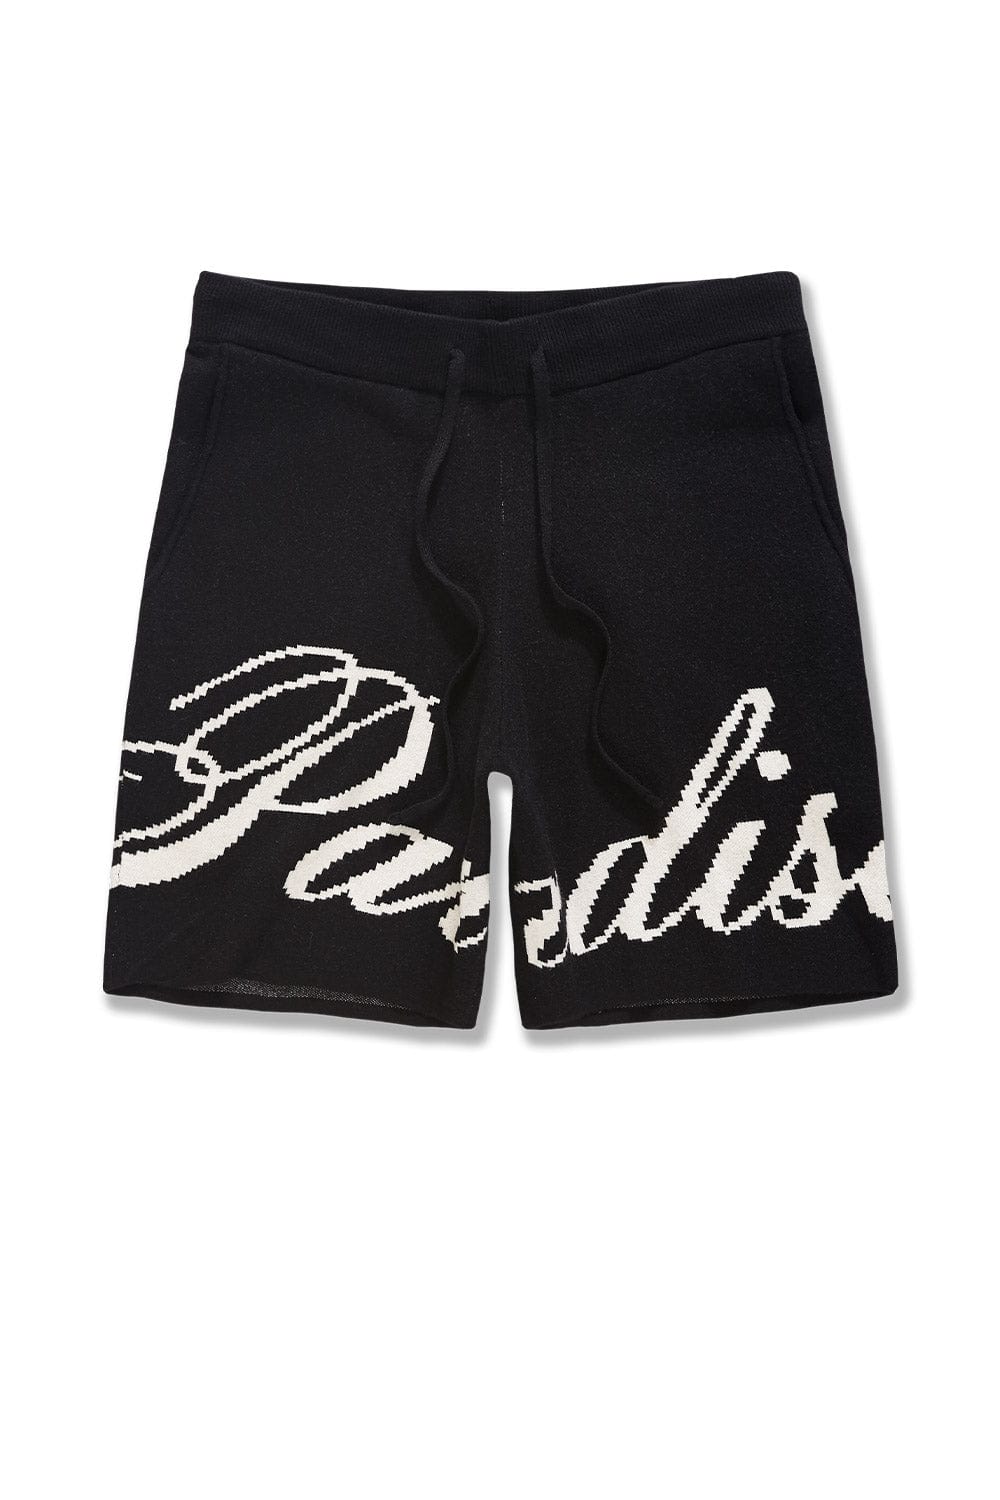 Jordan Craig Retro - Paradise Knit Shorts (Black) S / Black